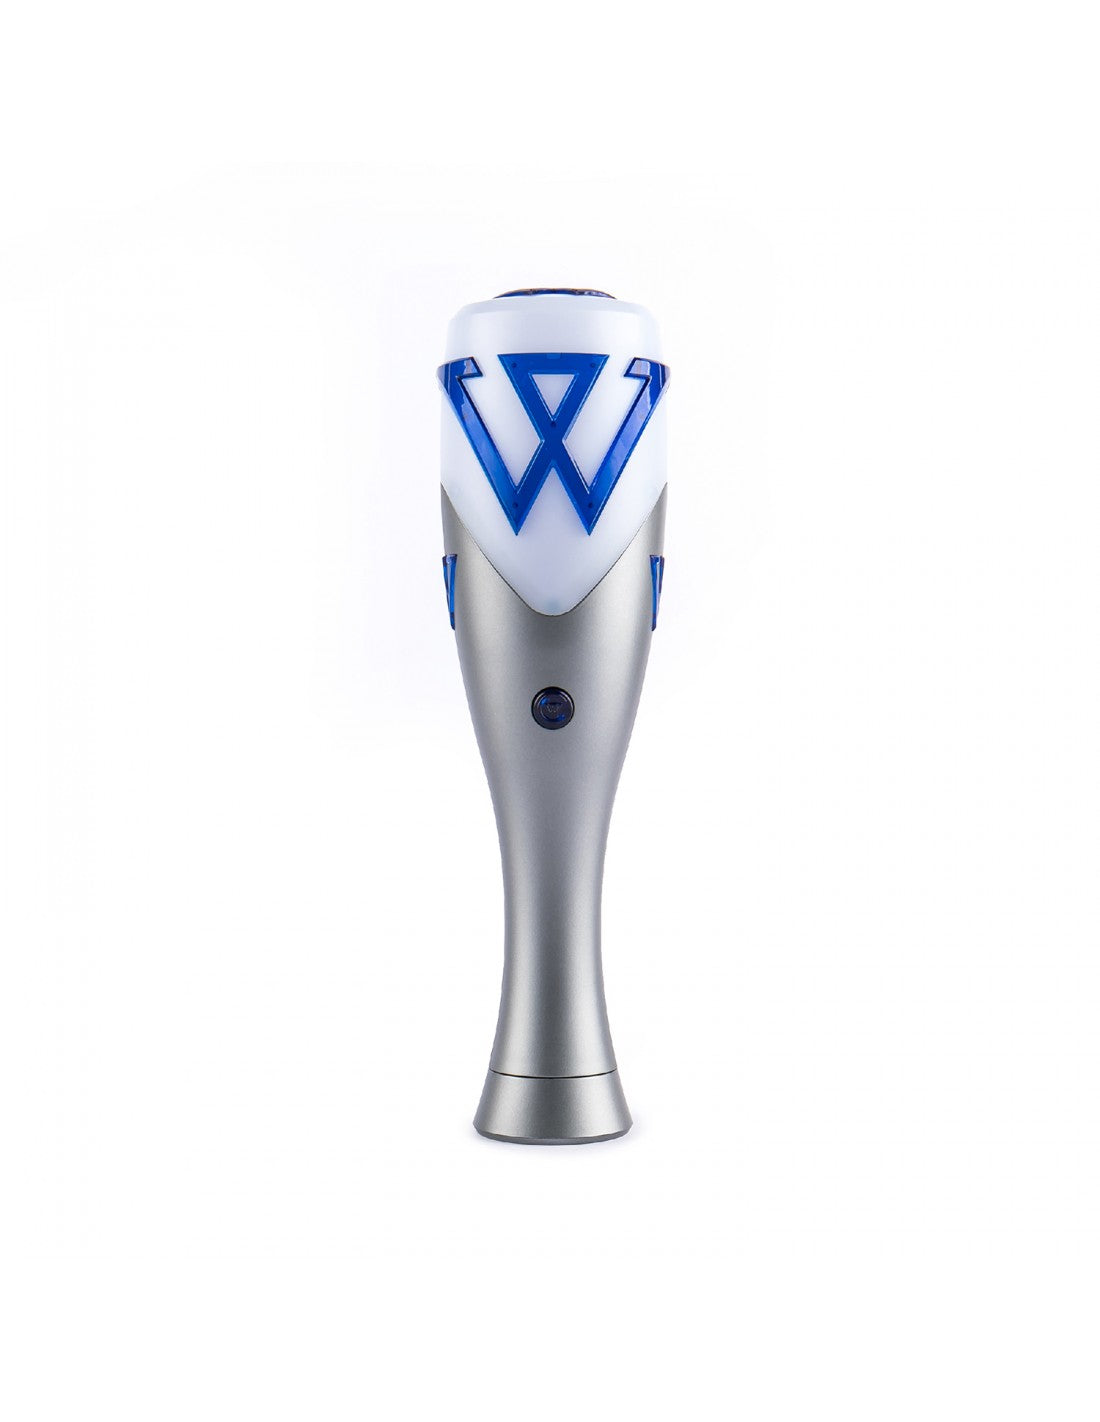 WINNER Official Light Stick Ver. 2